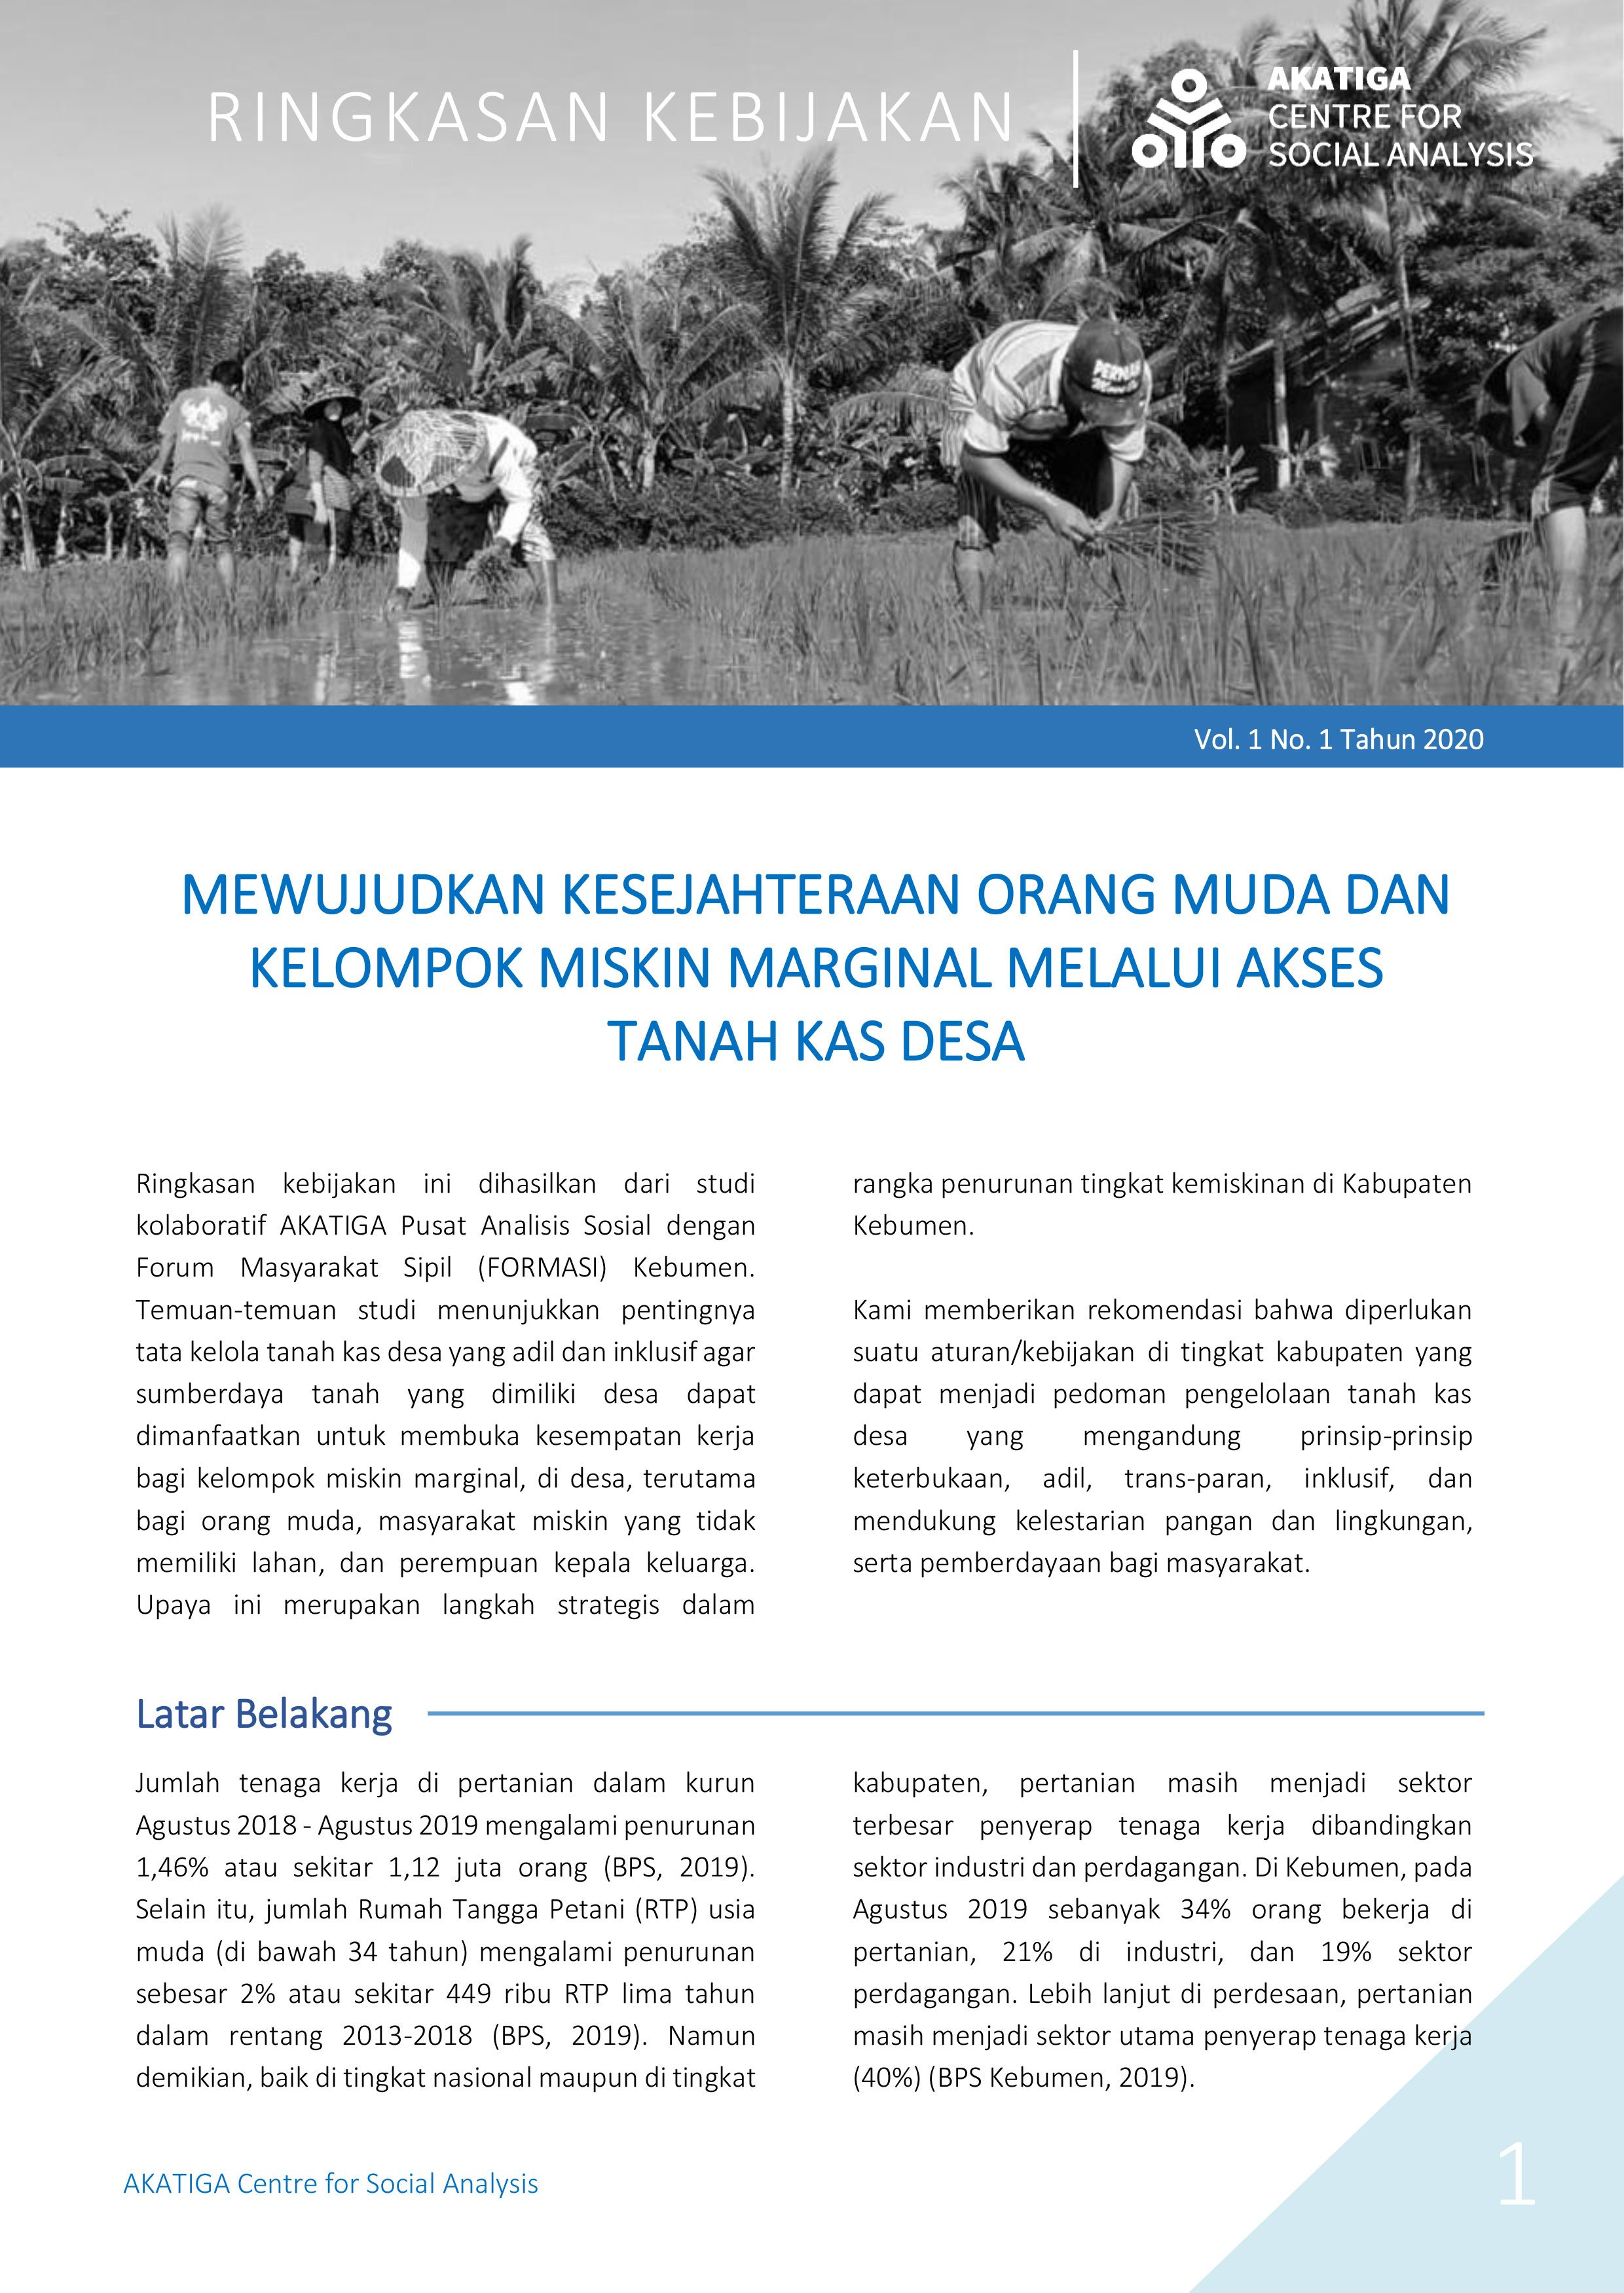 Policy Brief: Mewujudkan Kesejahteraan Orang Muda dan Kelompok Miskin Marginal Melalui Akses Tanah Kas Desa